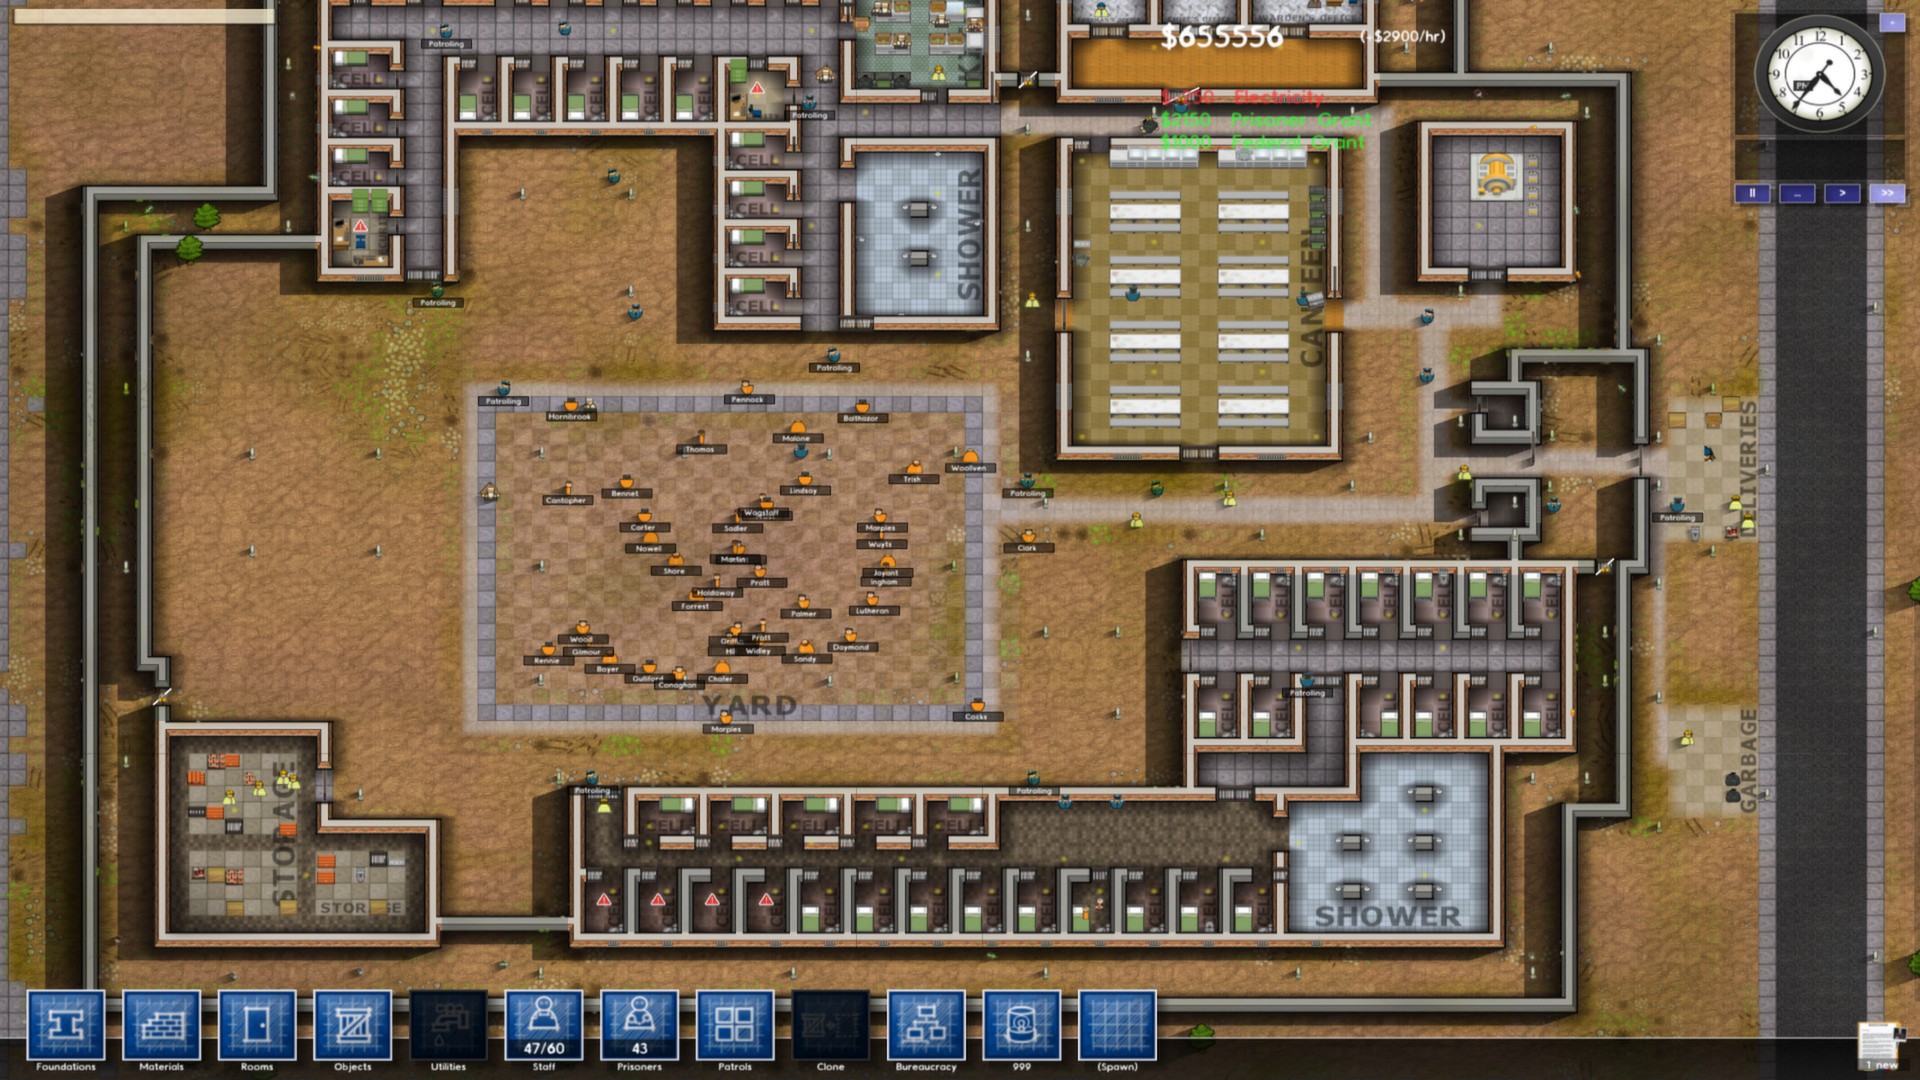 free download prison architect steam